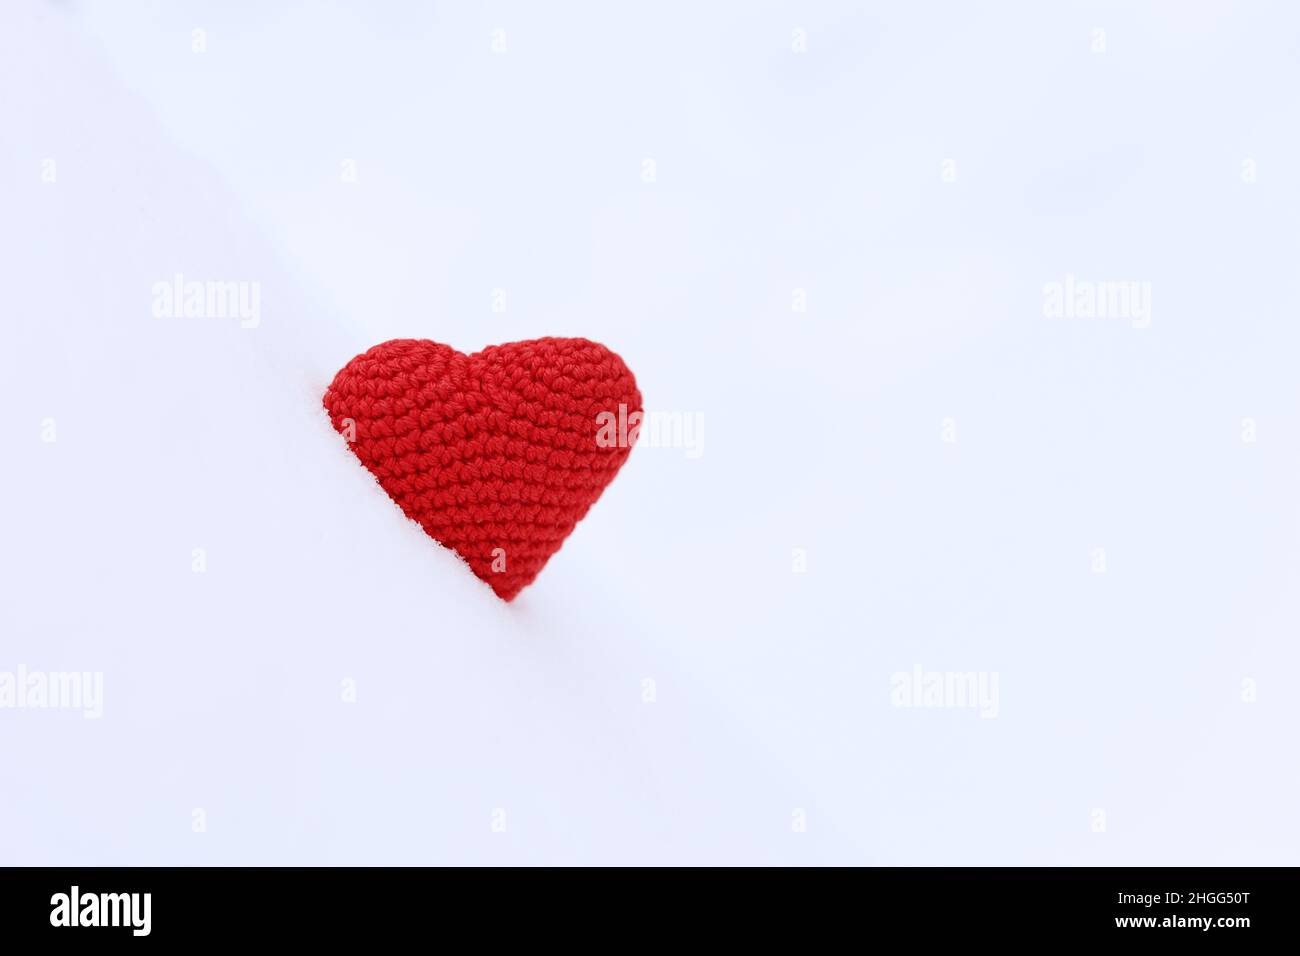 Coeur tricoté rouge dans la neige.Fond pour la carte de Saint-Valentin, amour romantique Banque D'Images